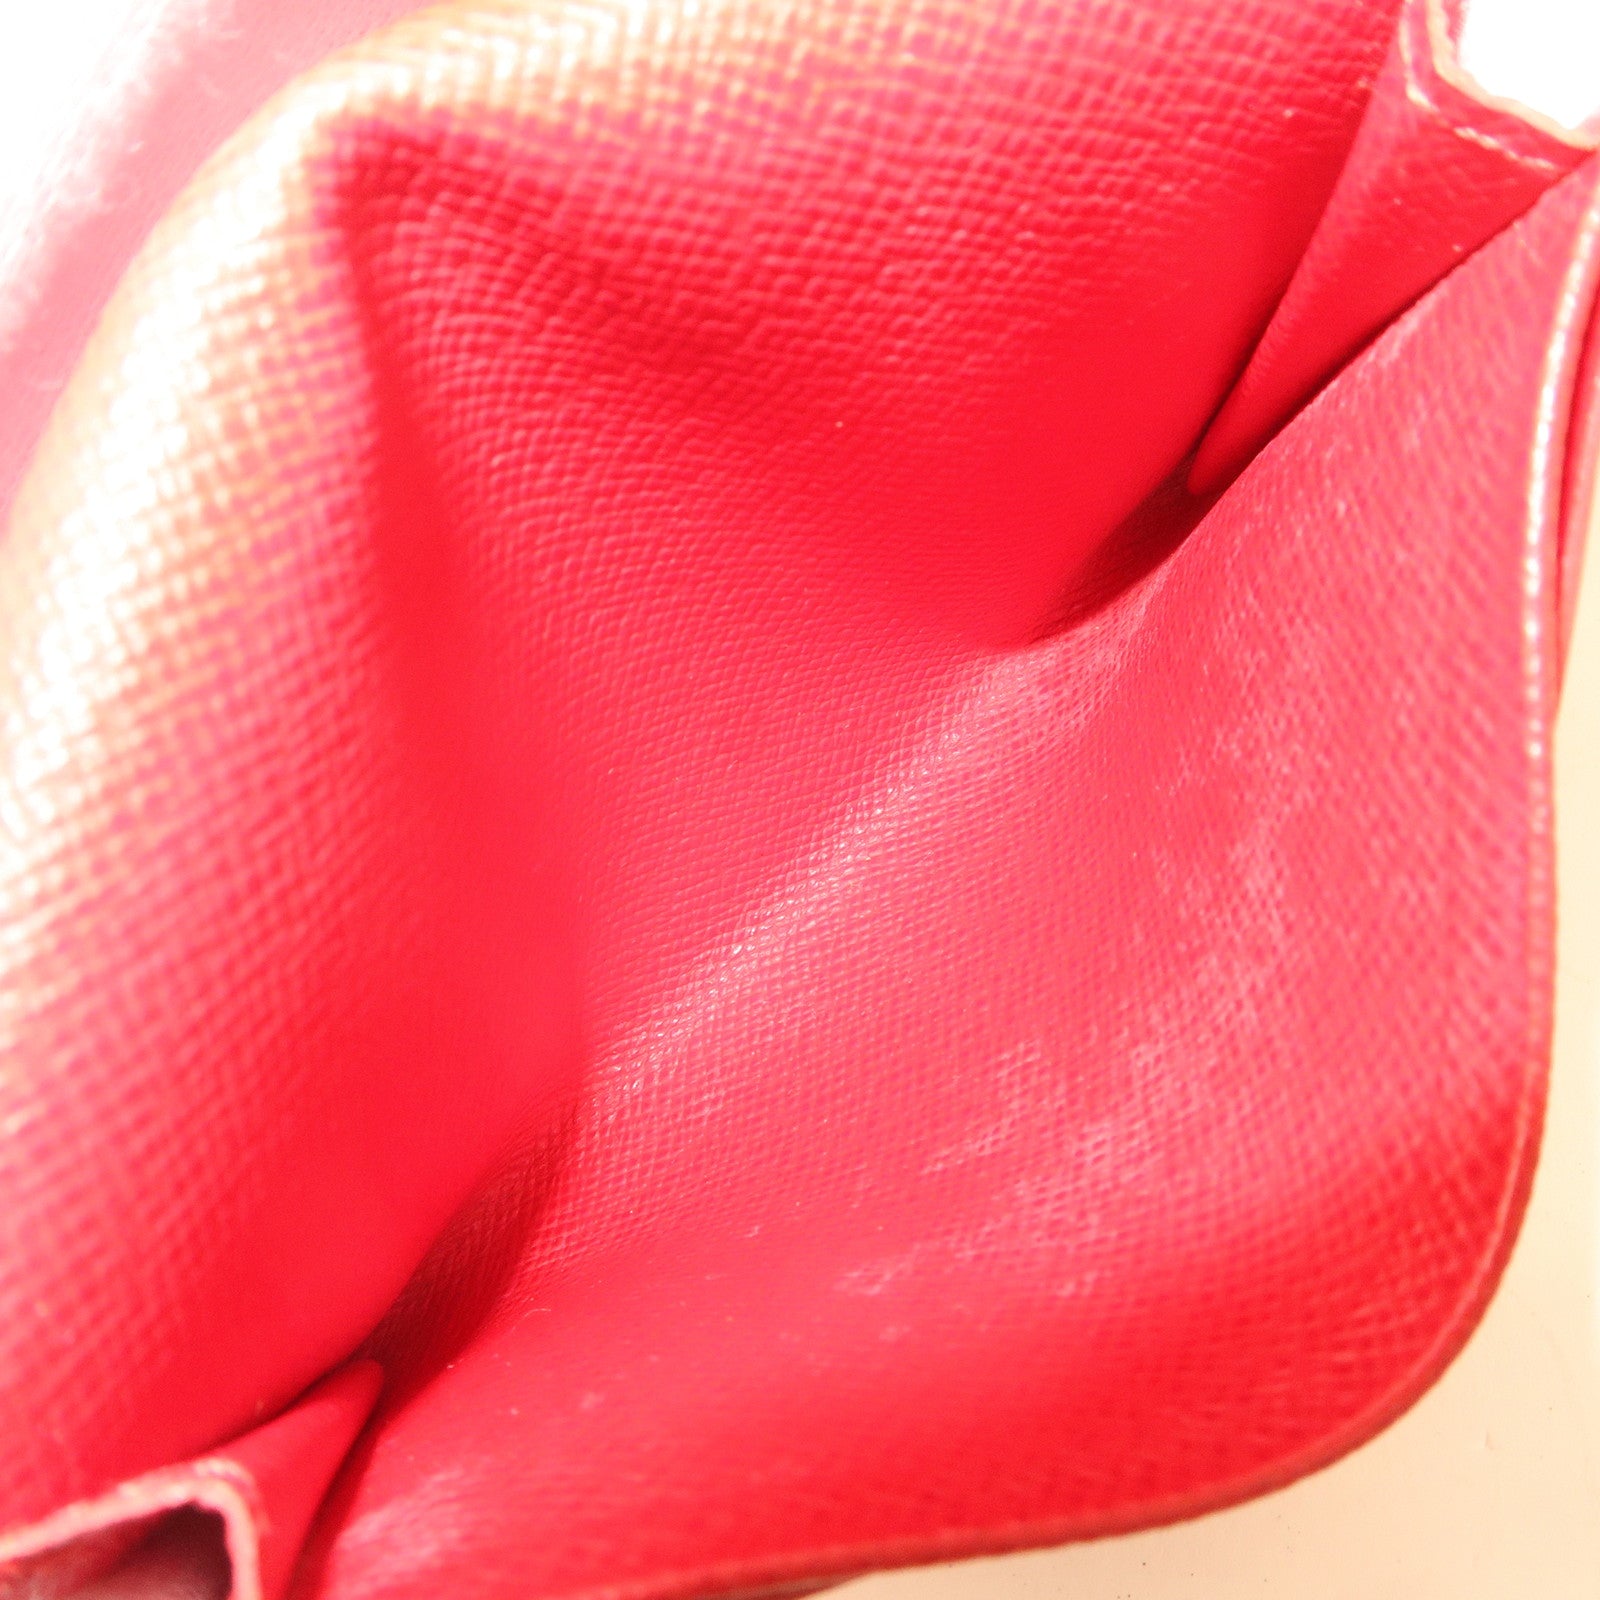 Card Holder - Luxury Epi Leather Pink